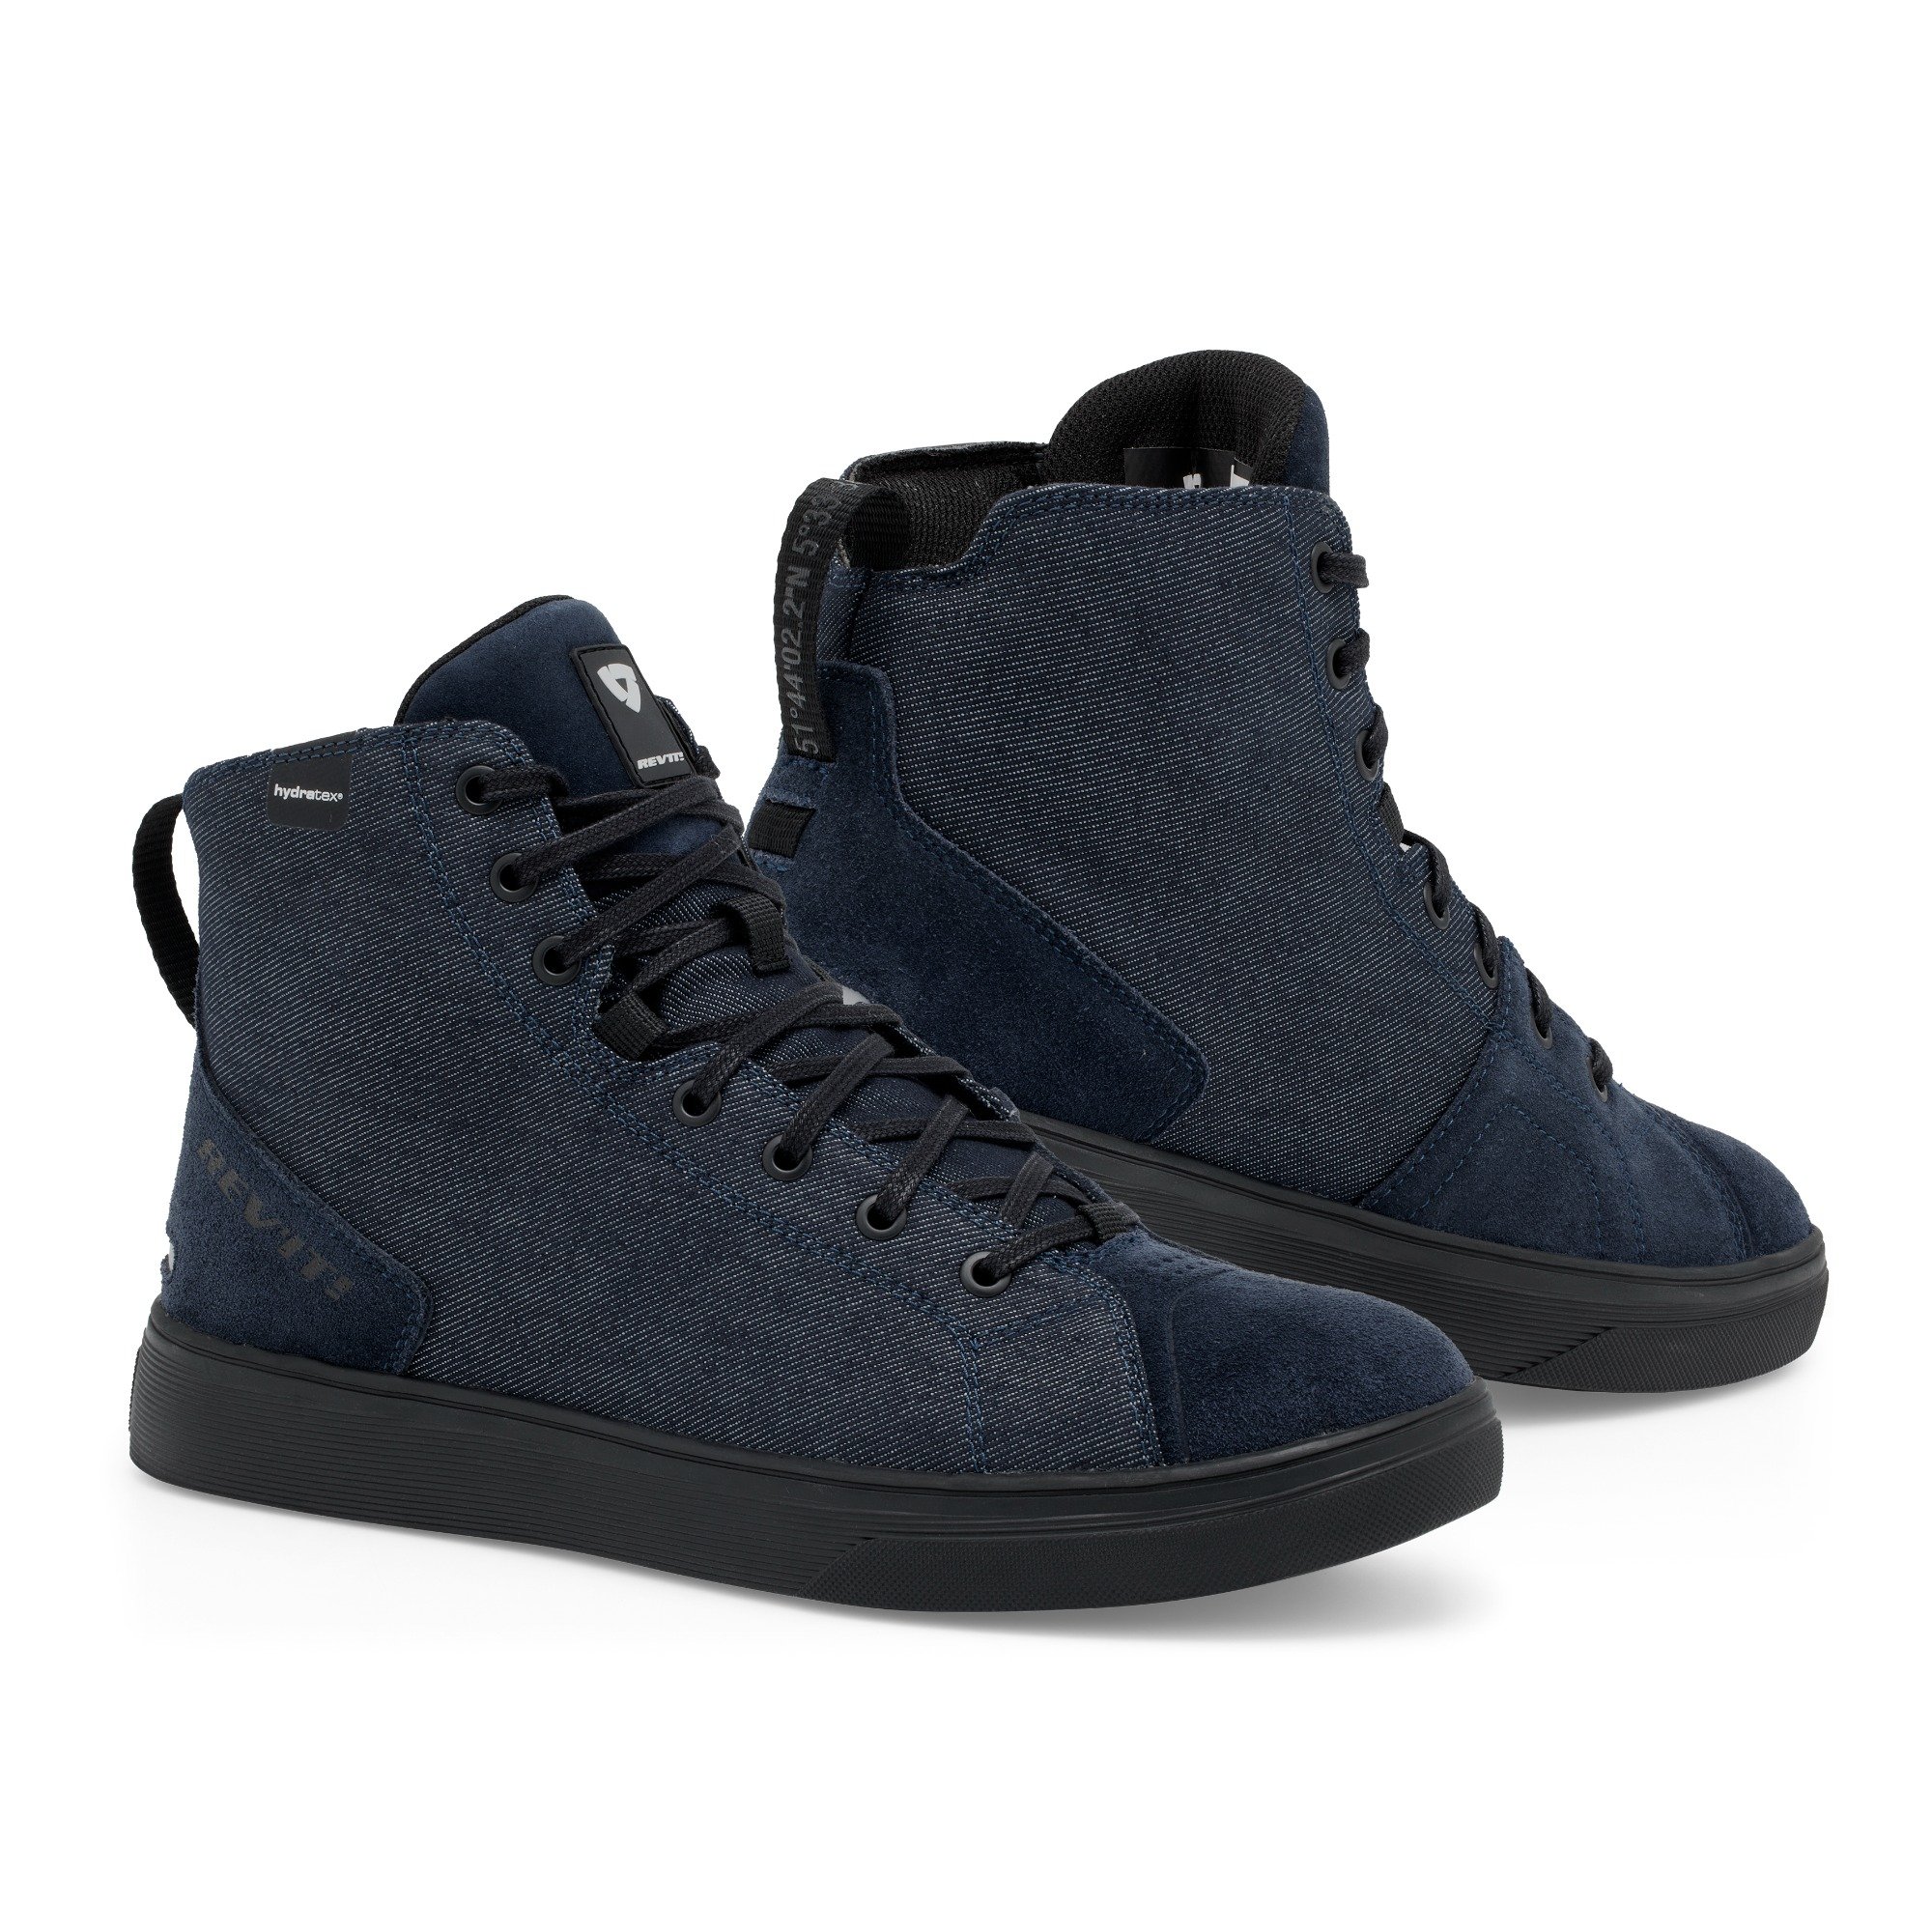 Image of REV'IT! Delta H2O Chaussures Foncé Bleu Noir Taille 39